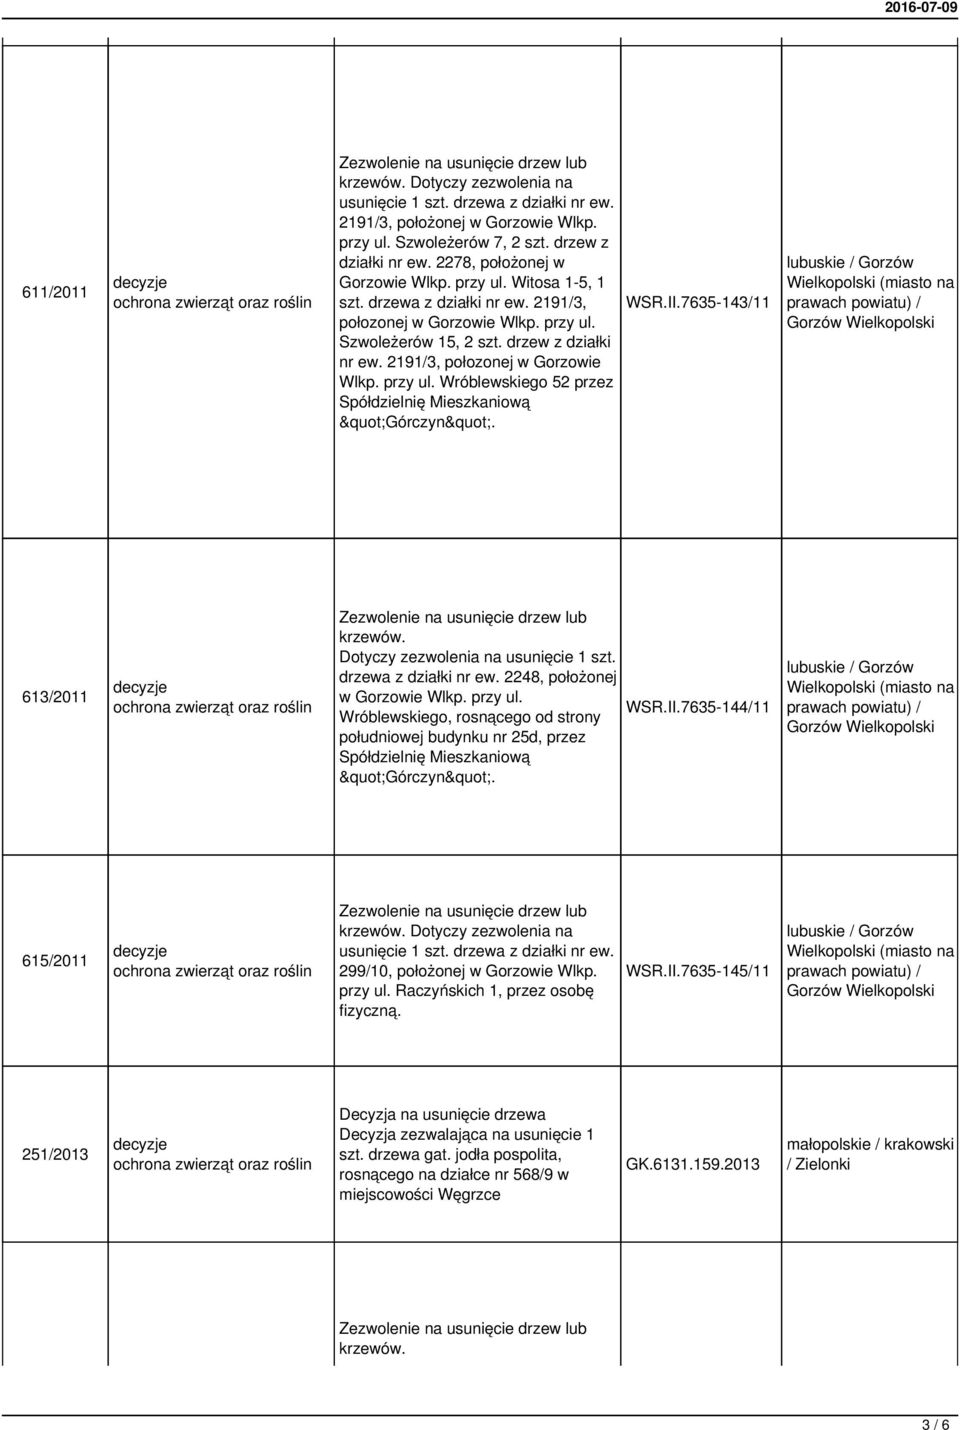 II.7635-143/11 613/2011 Dotyczy zezwolenia na usunięcie 1 szt. drzewa z działki nr ew. 2248, położonej w Gorzowie Wlkp. przy ul.